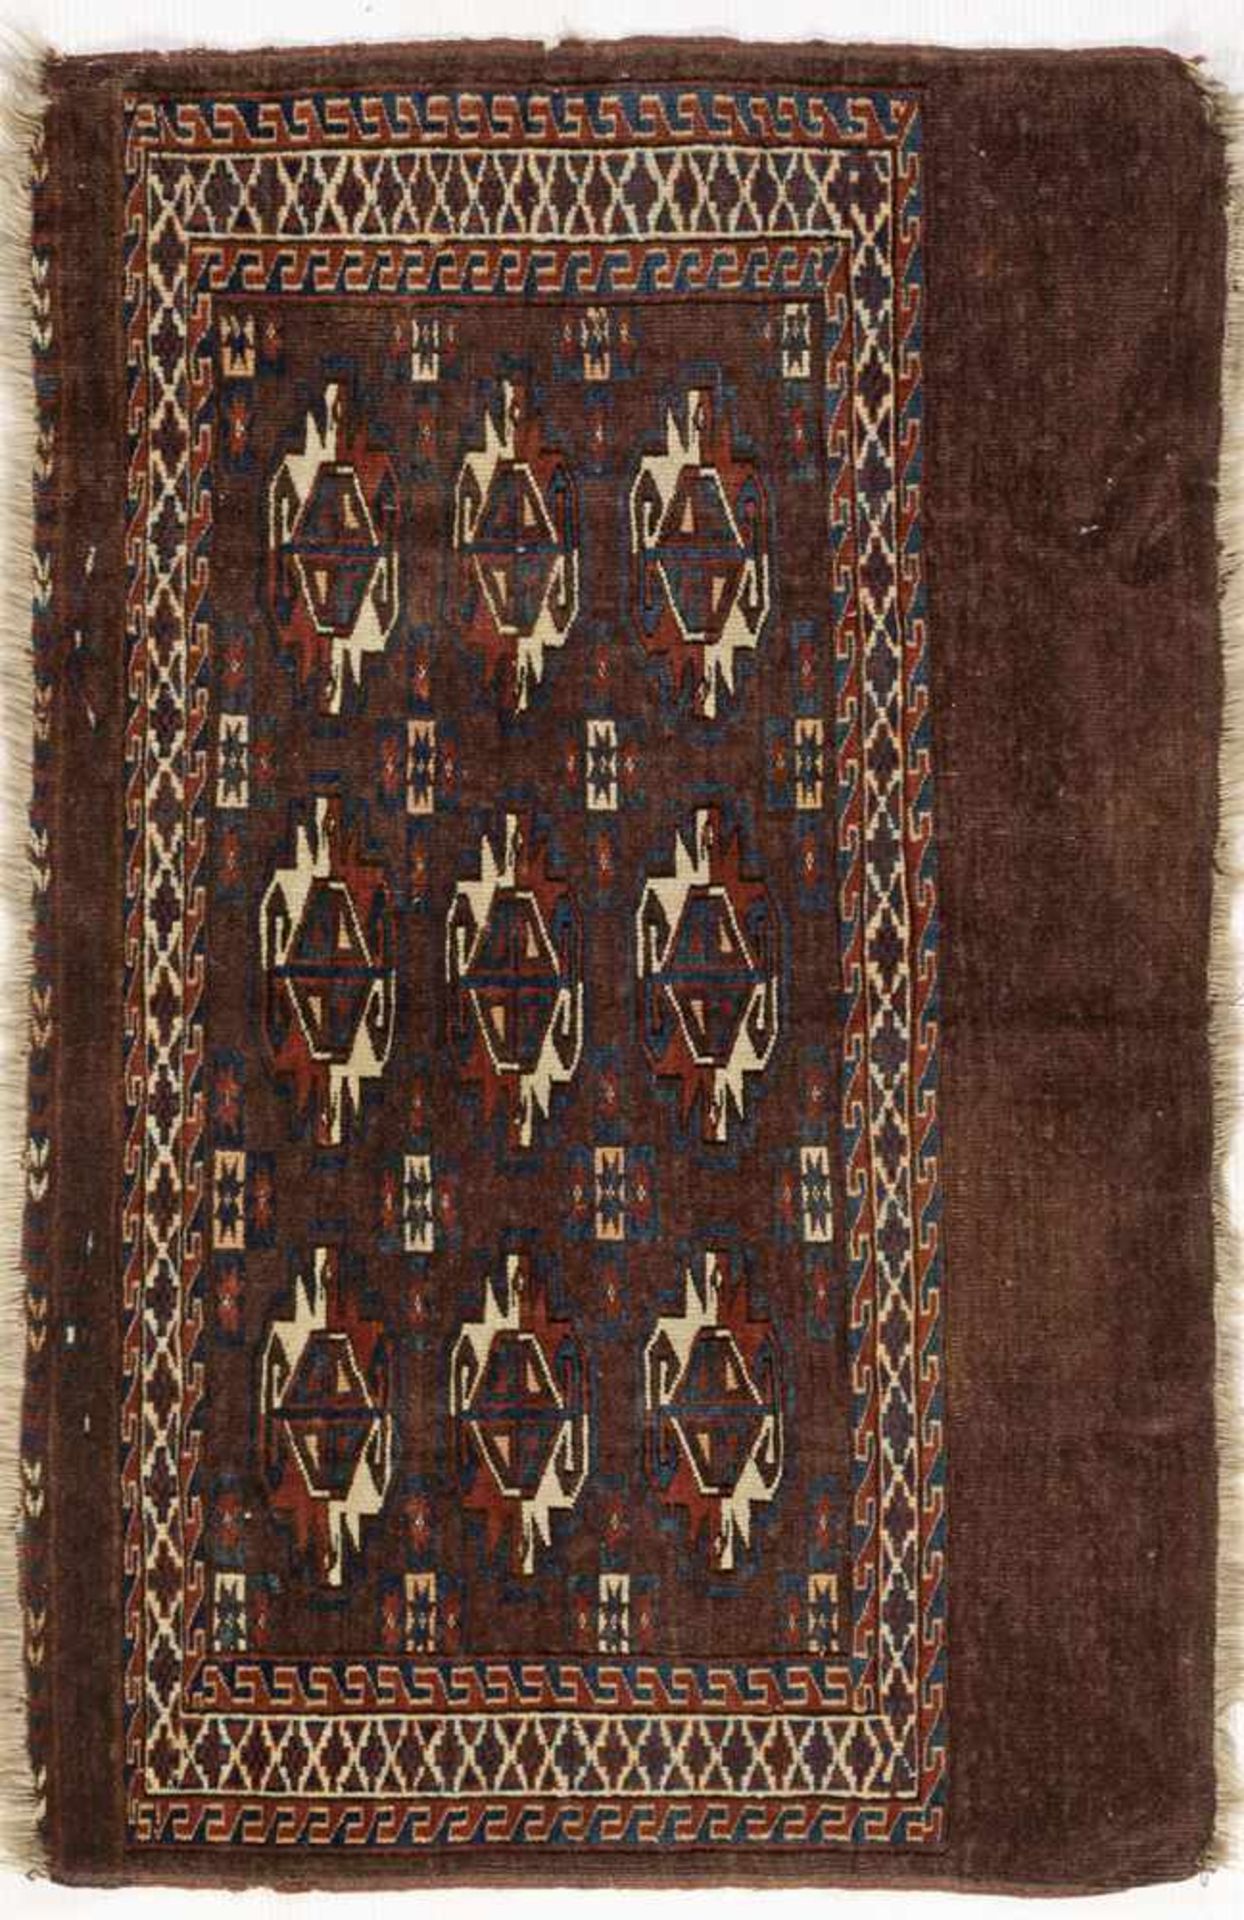 Antike Yomud Tschowal-TaschenfrontTurkmenistan. Um 1880-1900. Wolle auf Wolle. Auf rotbraunem